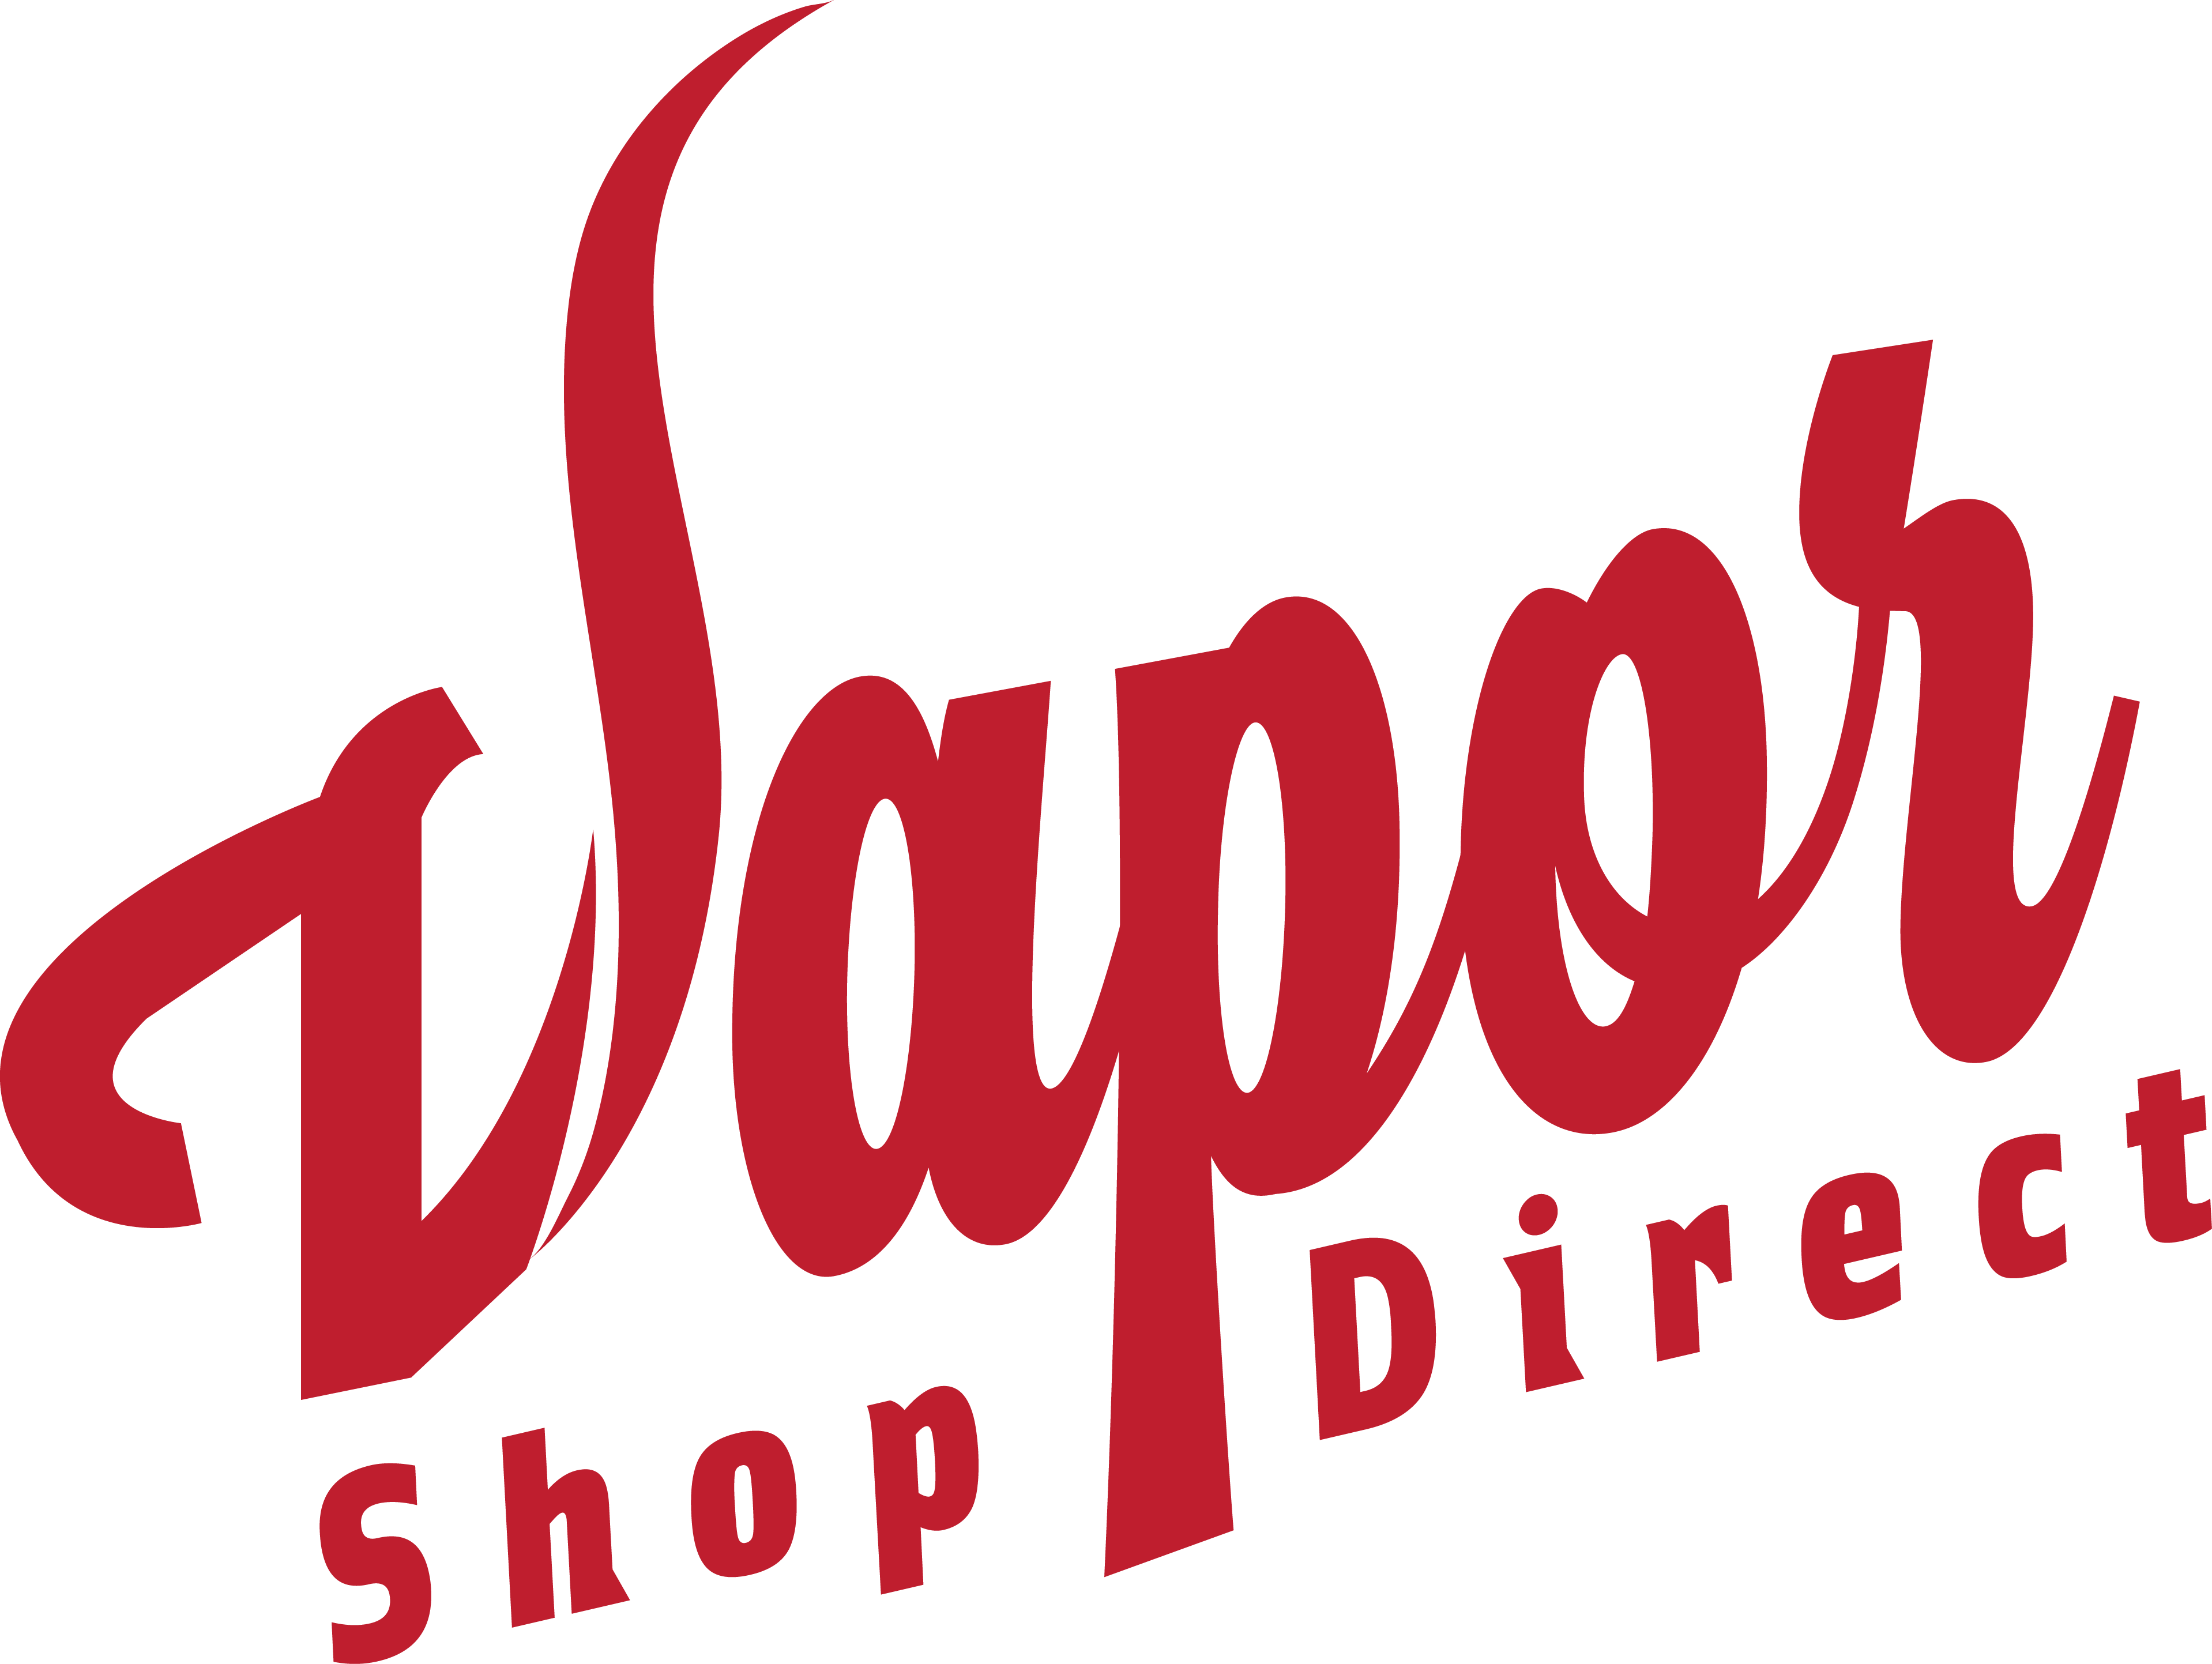 Vapour Shop Direct-logo.png